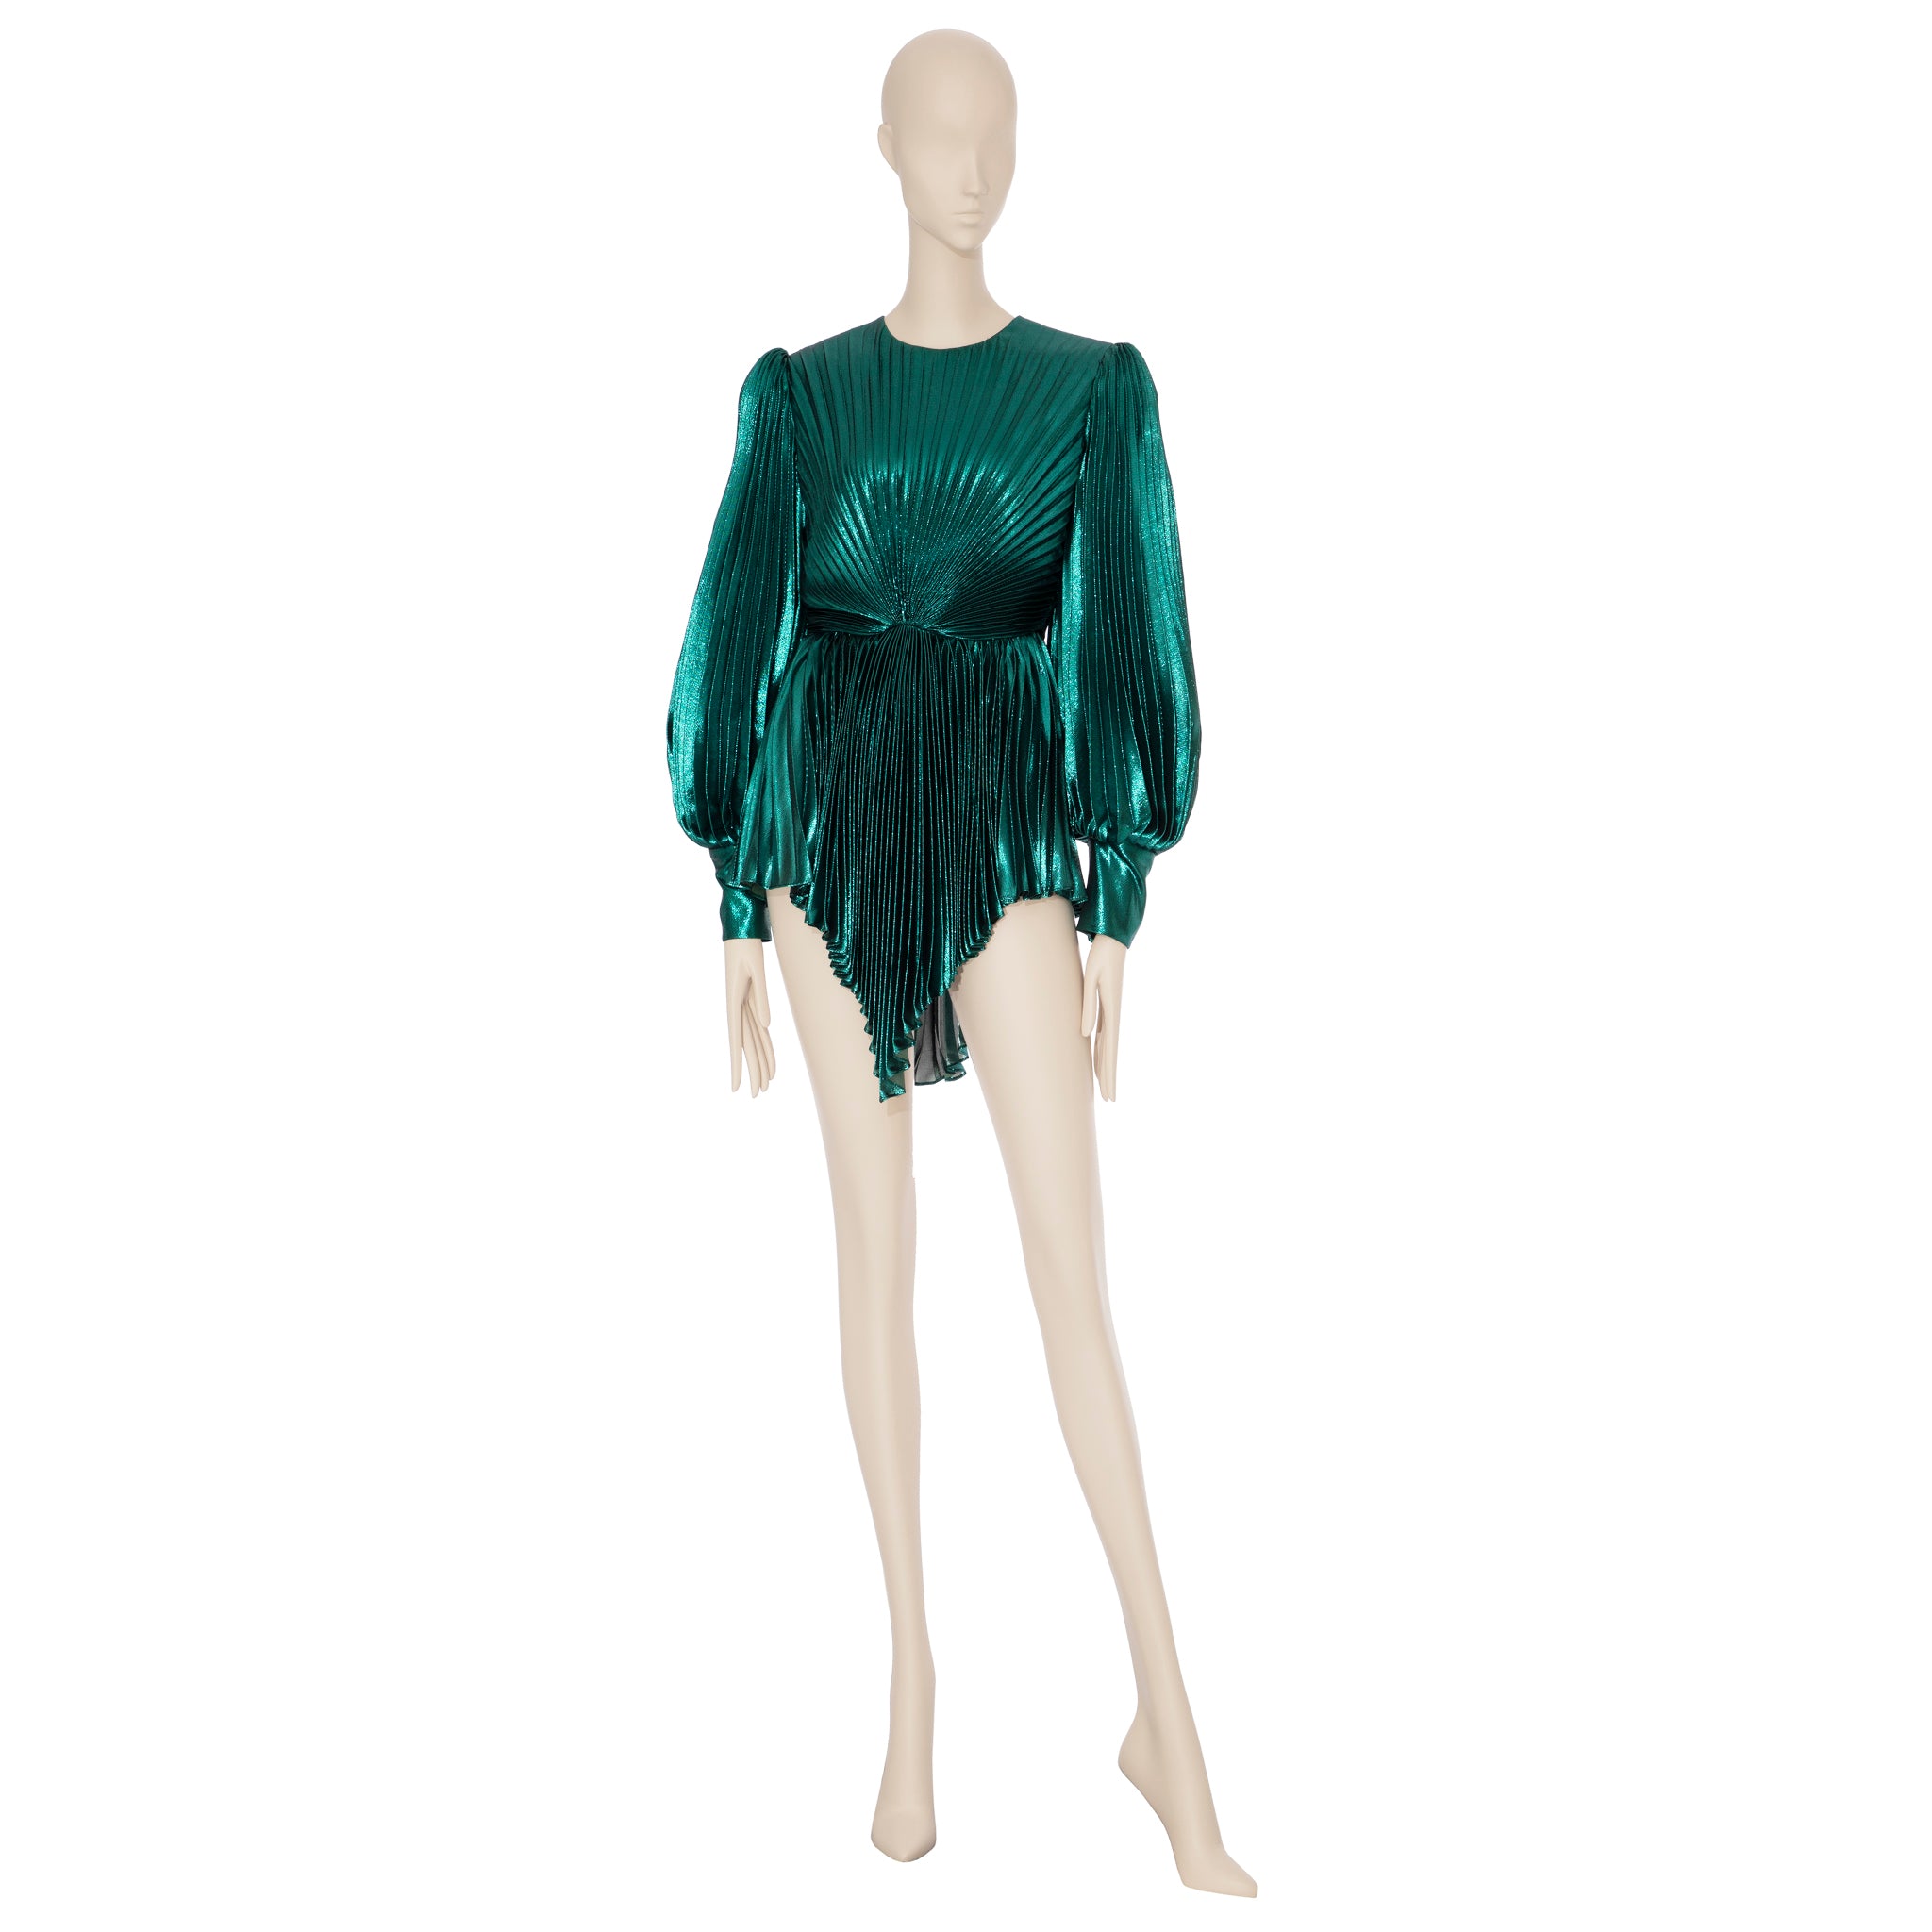 Gucci Iridescent Emerald Green Pleated Silk Blend Mini Dress 38 IT